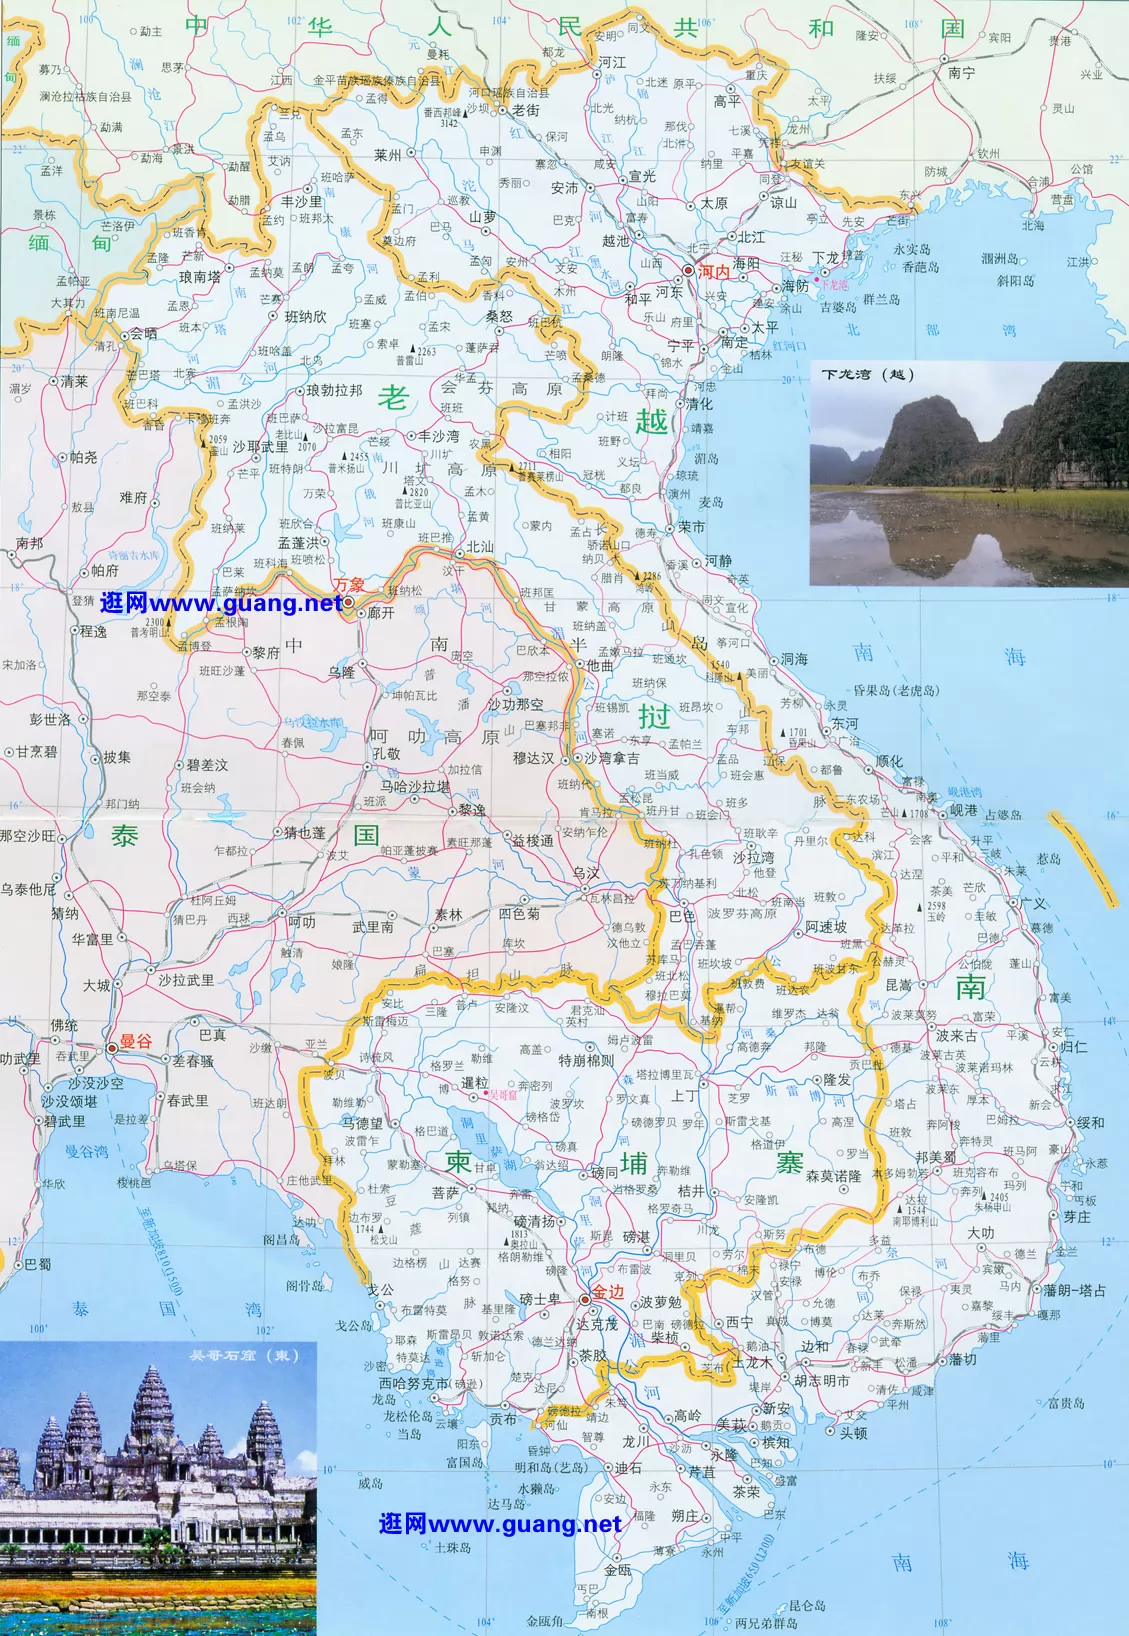 越南政区地图 - 越南地图 - 地理教师网